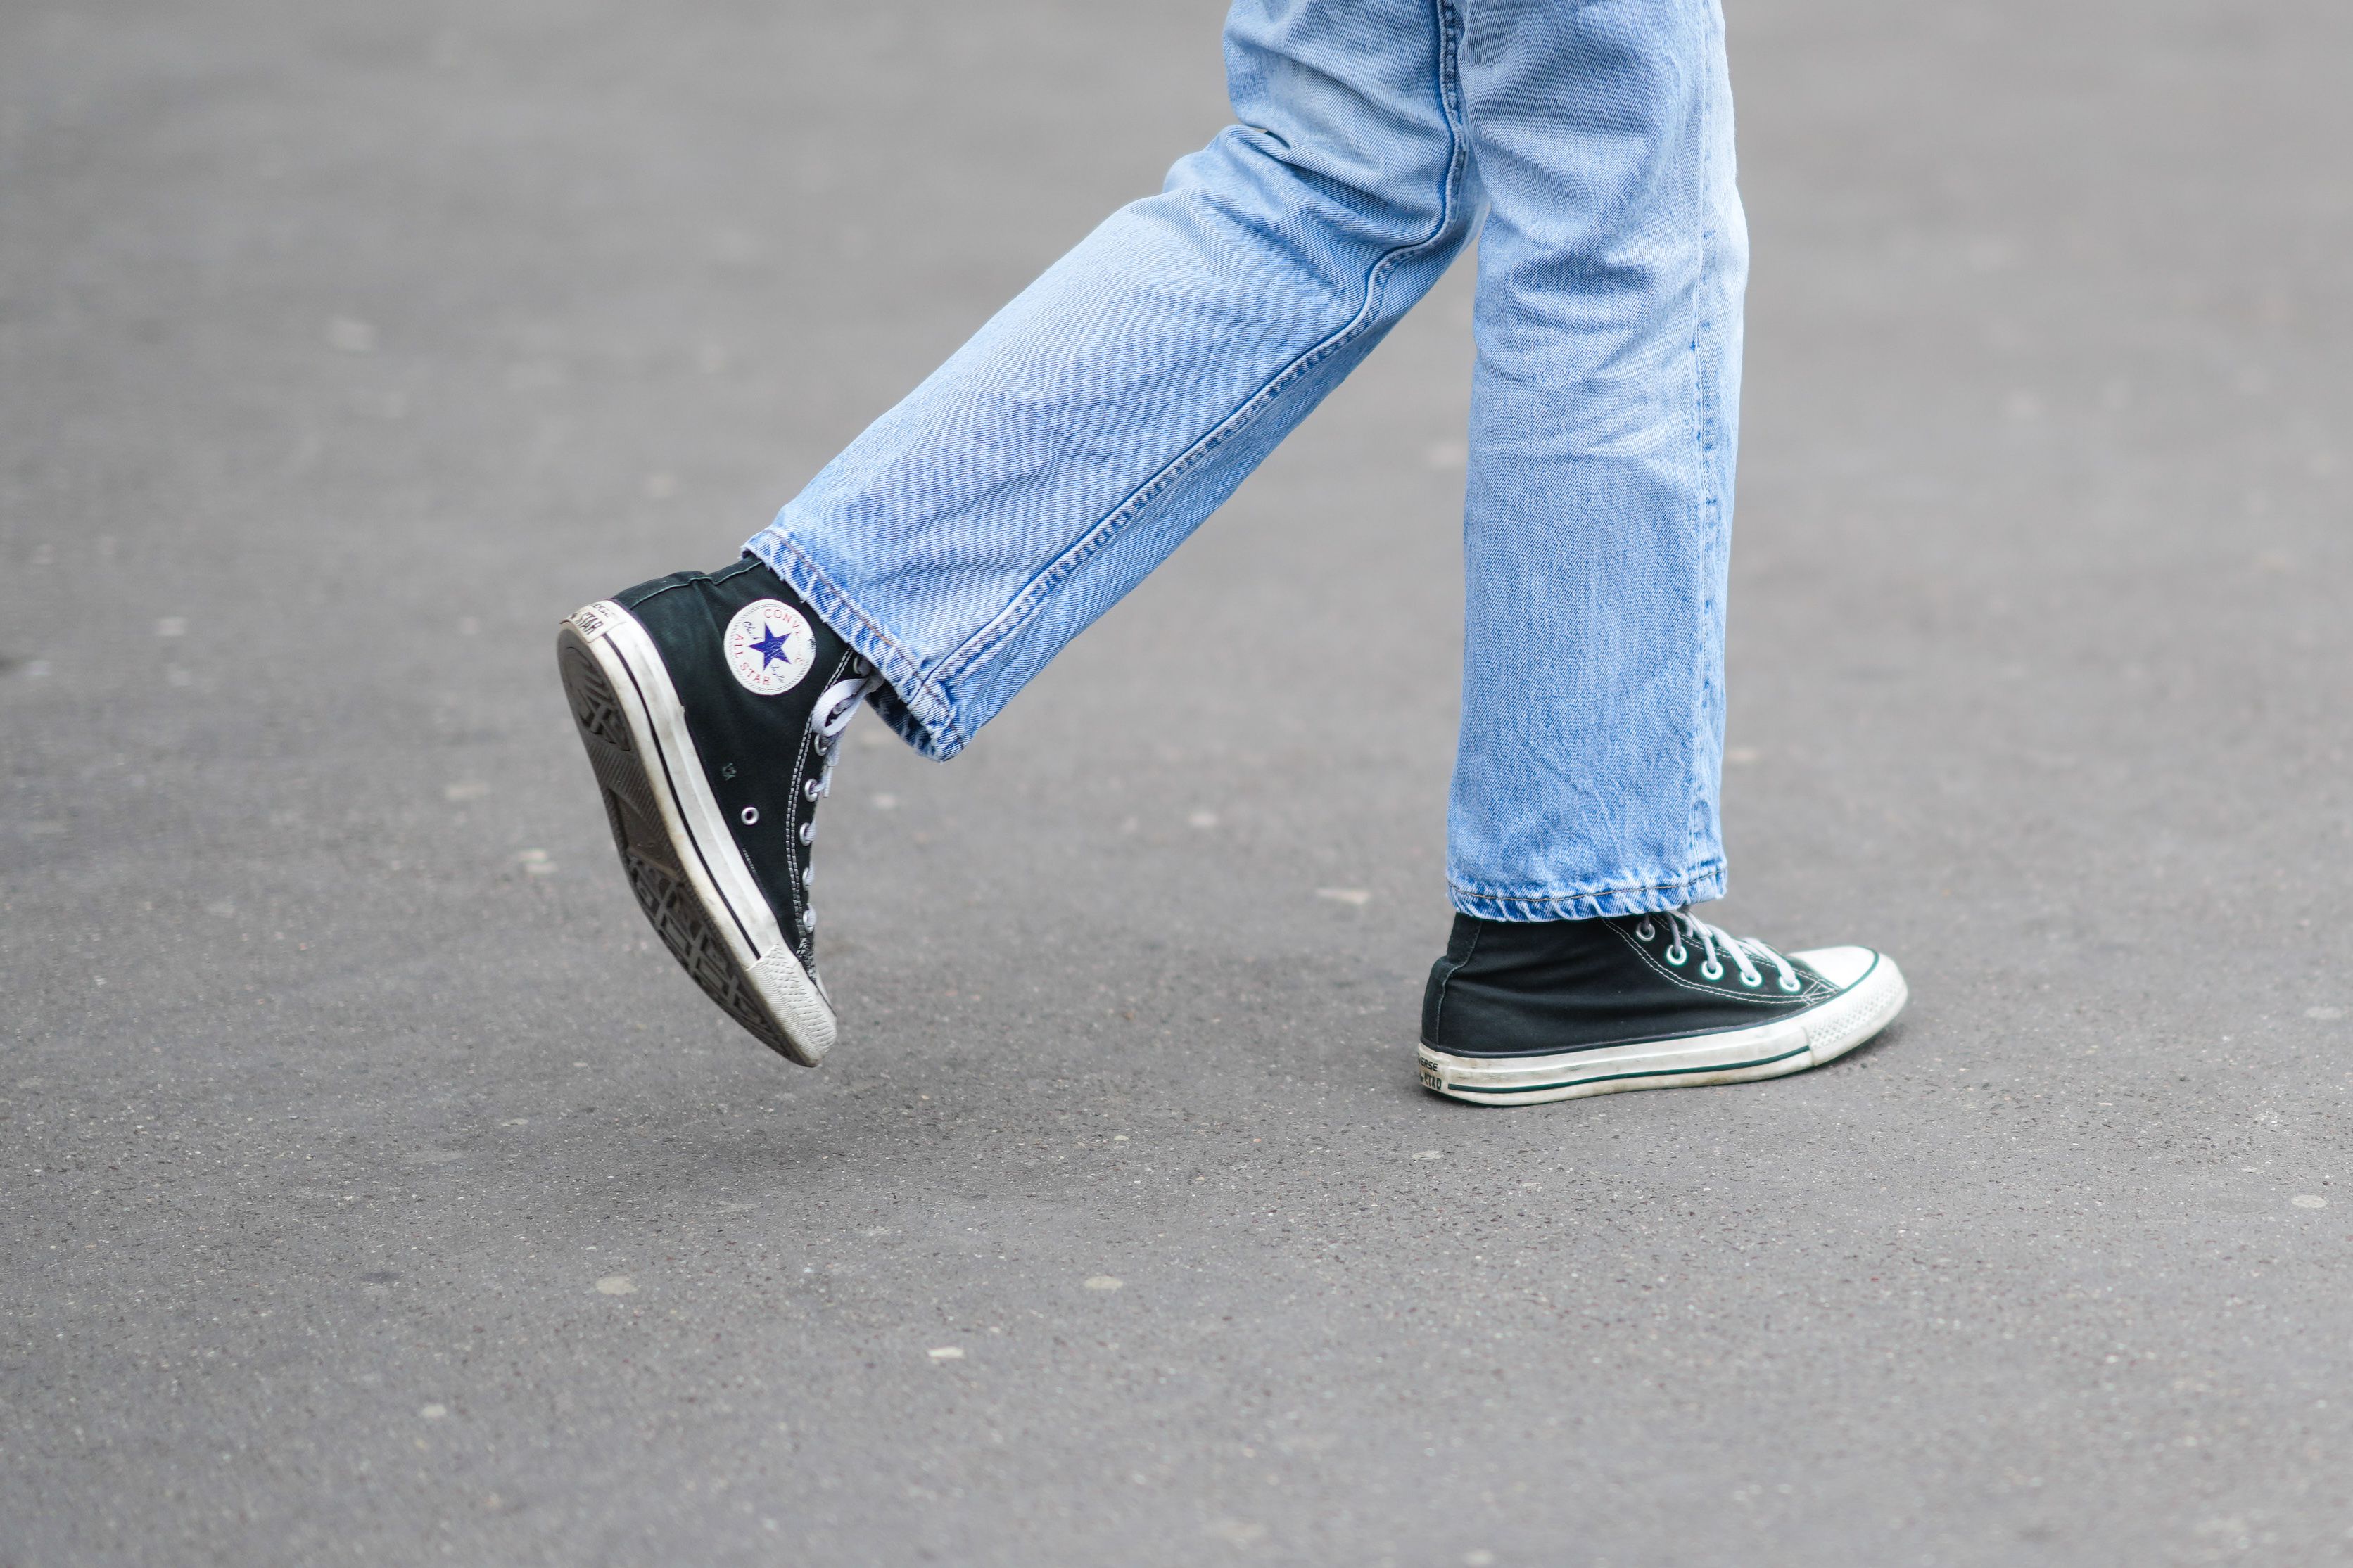 Qué zapatos quedan mejor con jeans rectos?